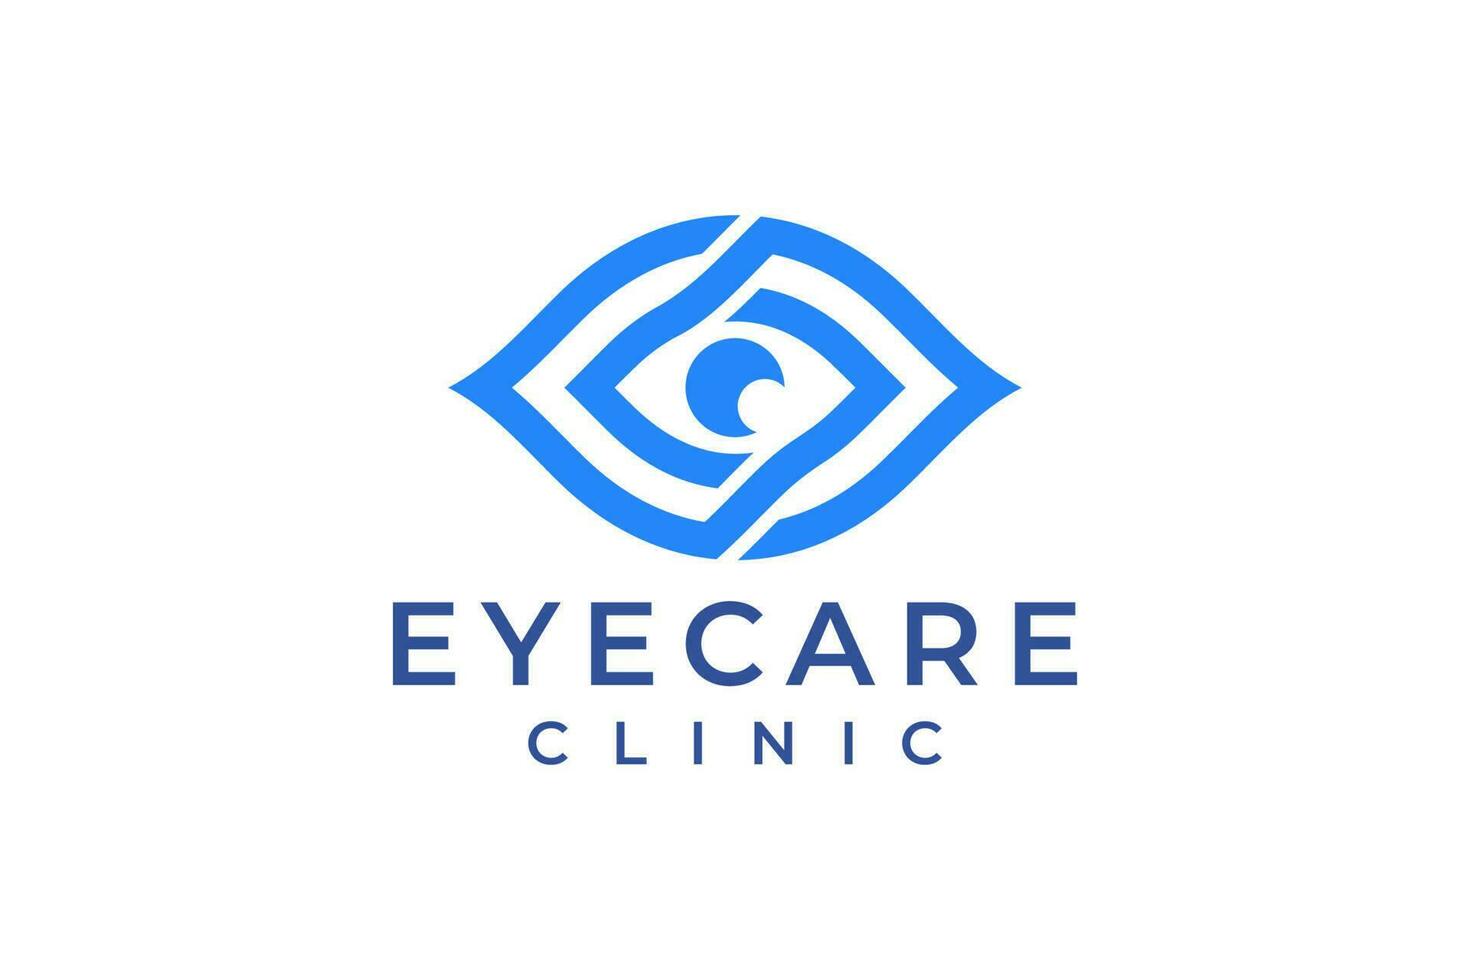 Creative Care Eye Concept Logo Design Template, Eye Care logo design Vector, Icon Symbol. vector